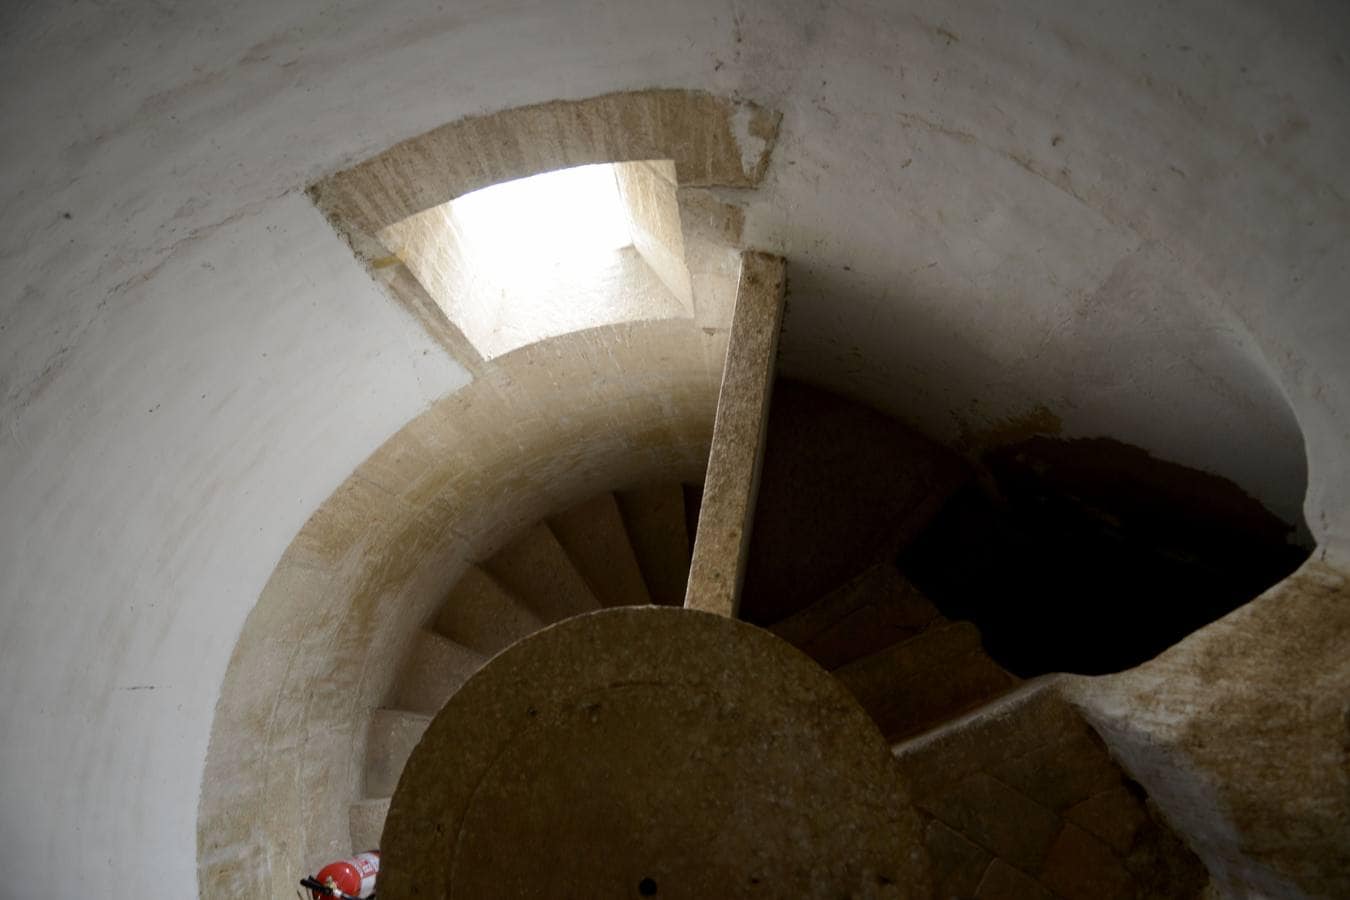 Las escaleras de acceso a la torre de Guadix ofrecen una solución arquitectónica ideada por Leonardo 